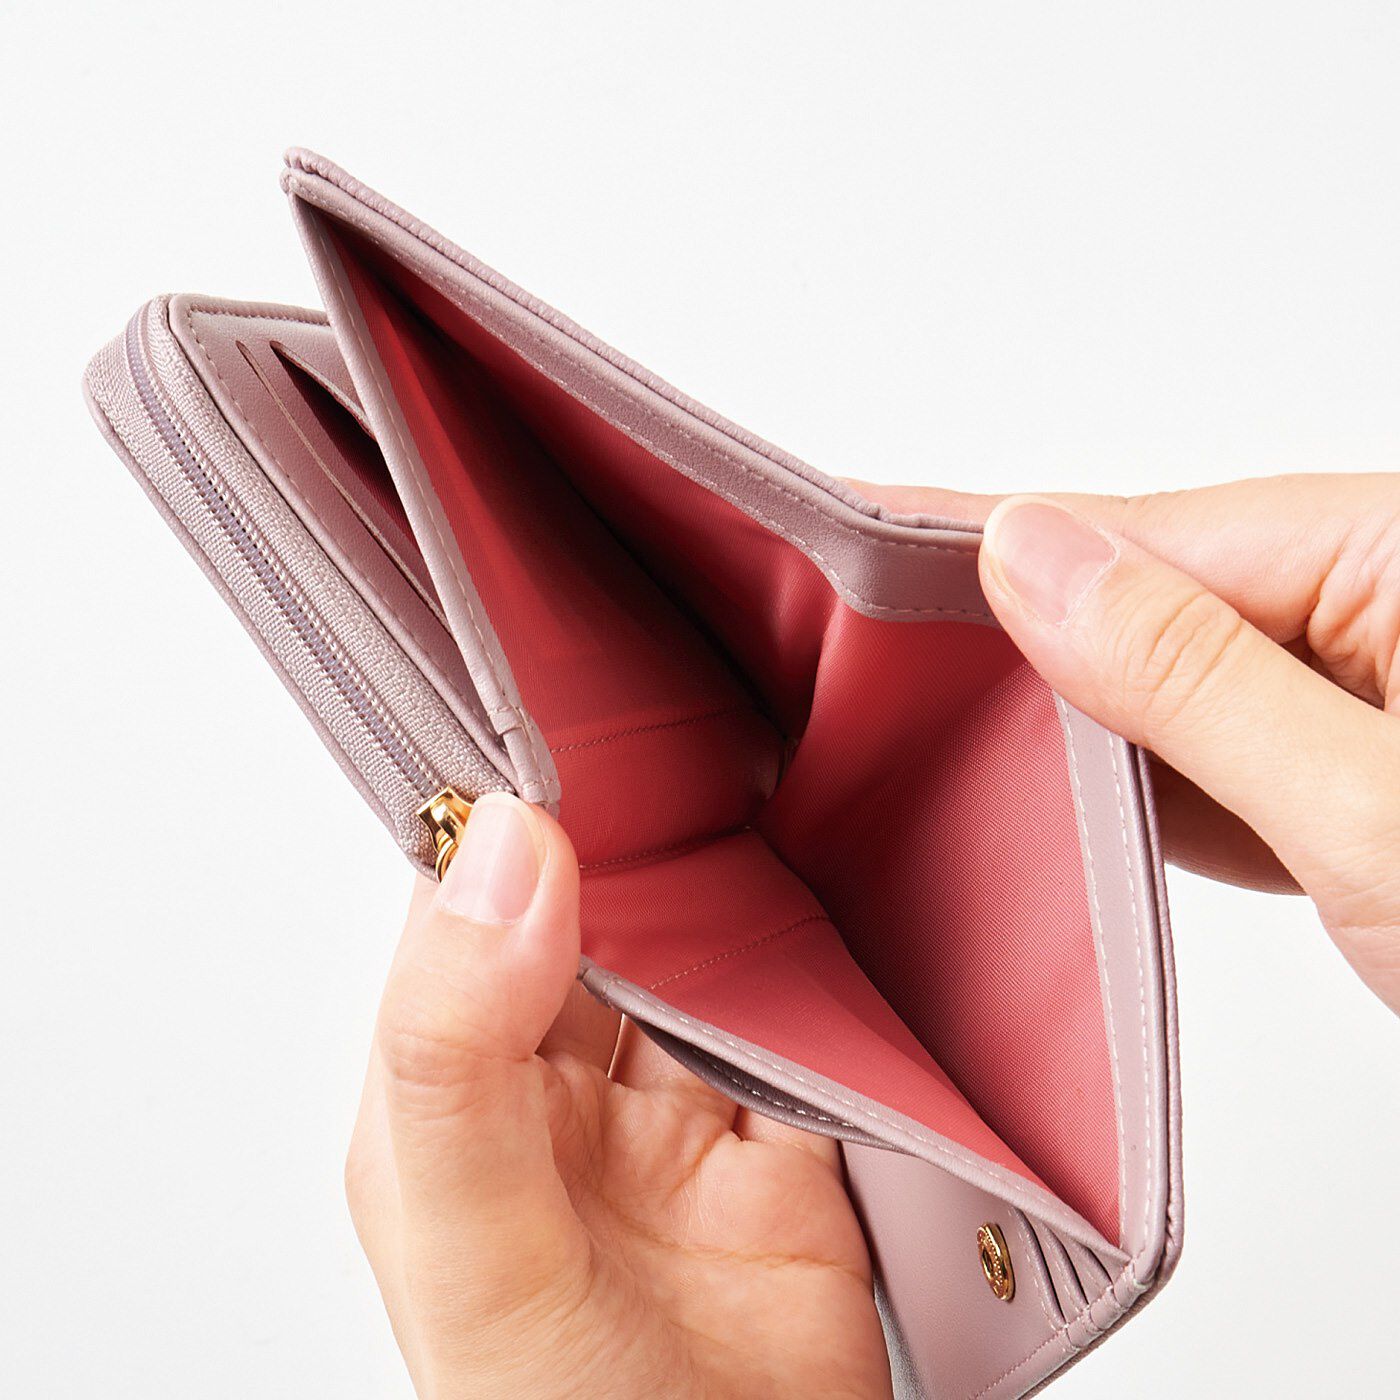 Real Stock|大人さくら色に心躍る　透明ポケットがついた二つ折り財布|お札入れの内側も心華やぐさくら色。